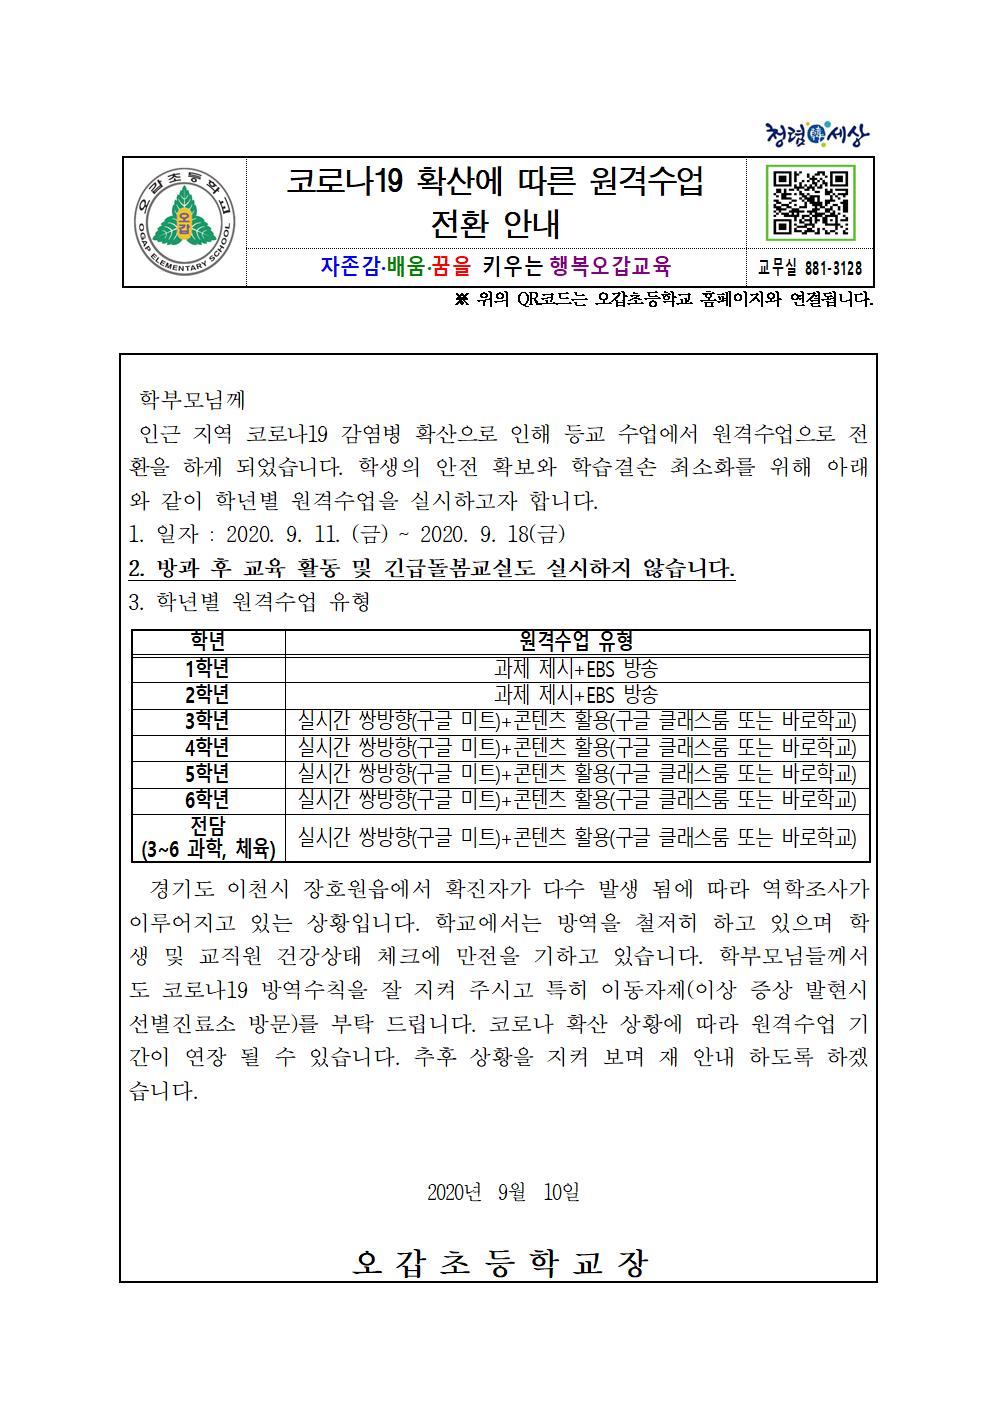 (오갑초) 원격수업안내(가정통신문)001